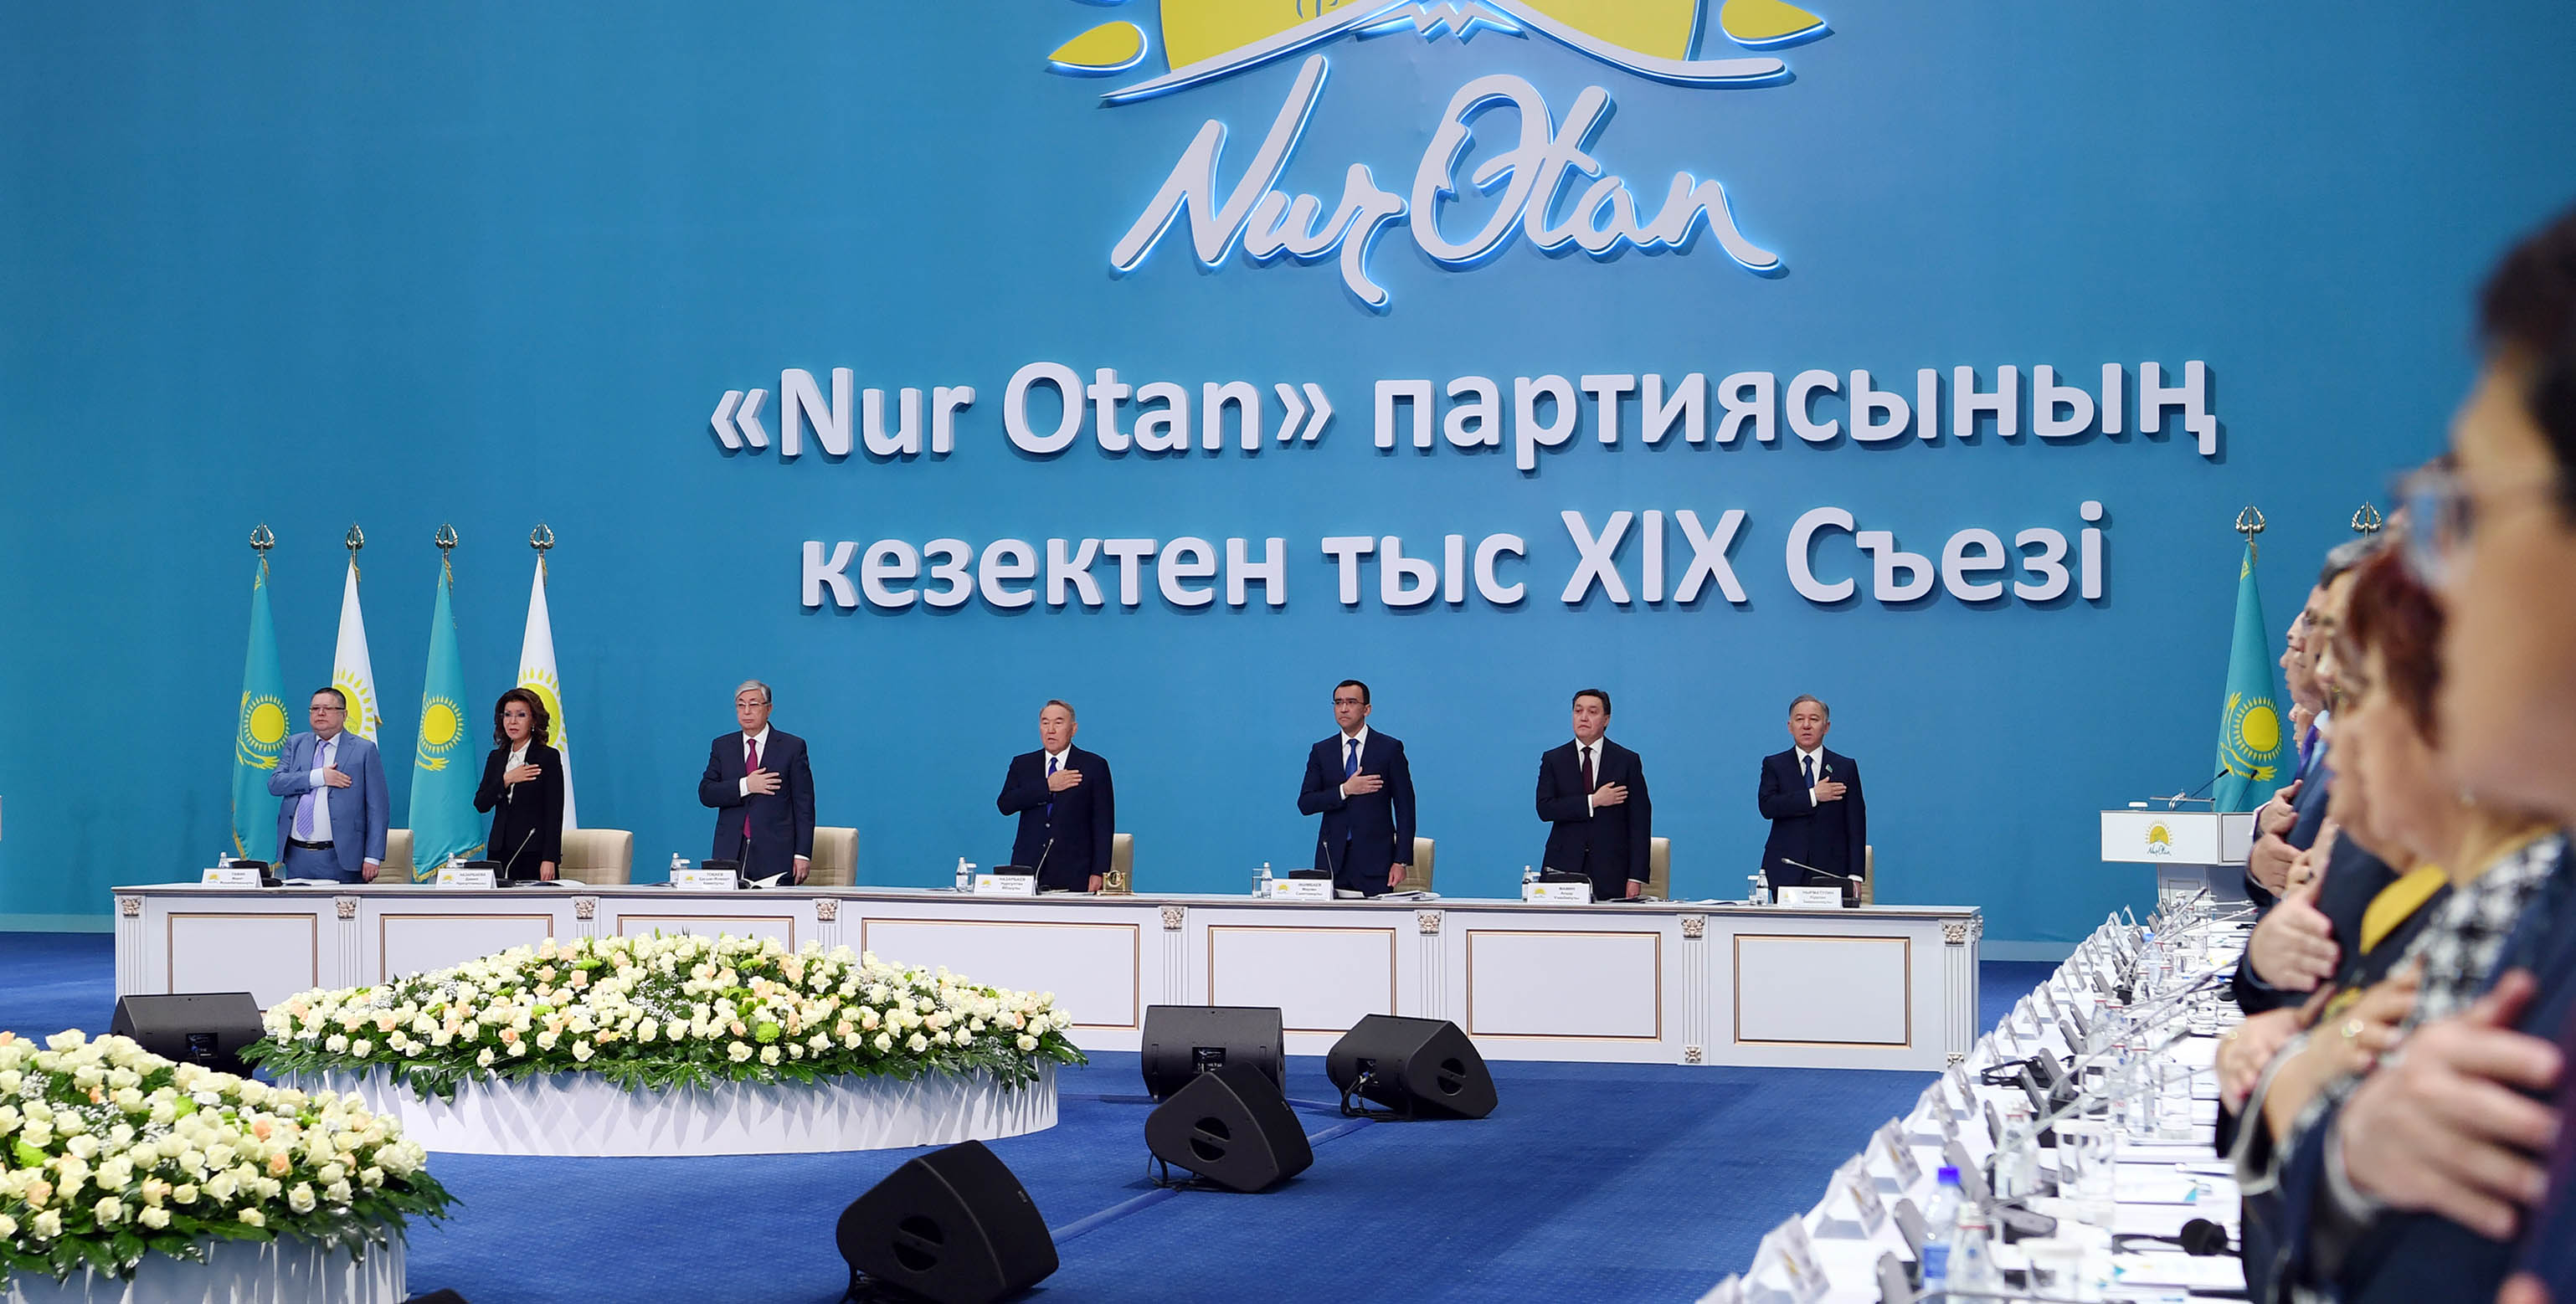 Нұрсұлтан Назарбаевтың төрағалығымен «Nur Otan» партиясының кезектен тыс ХІХ съезі өтті